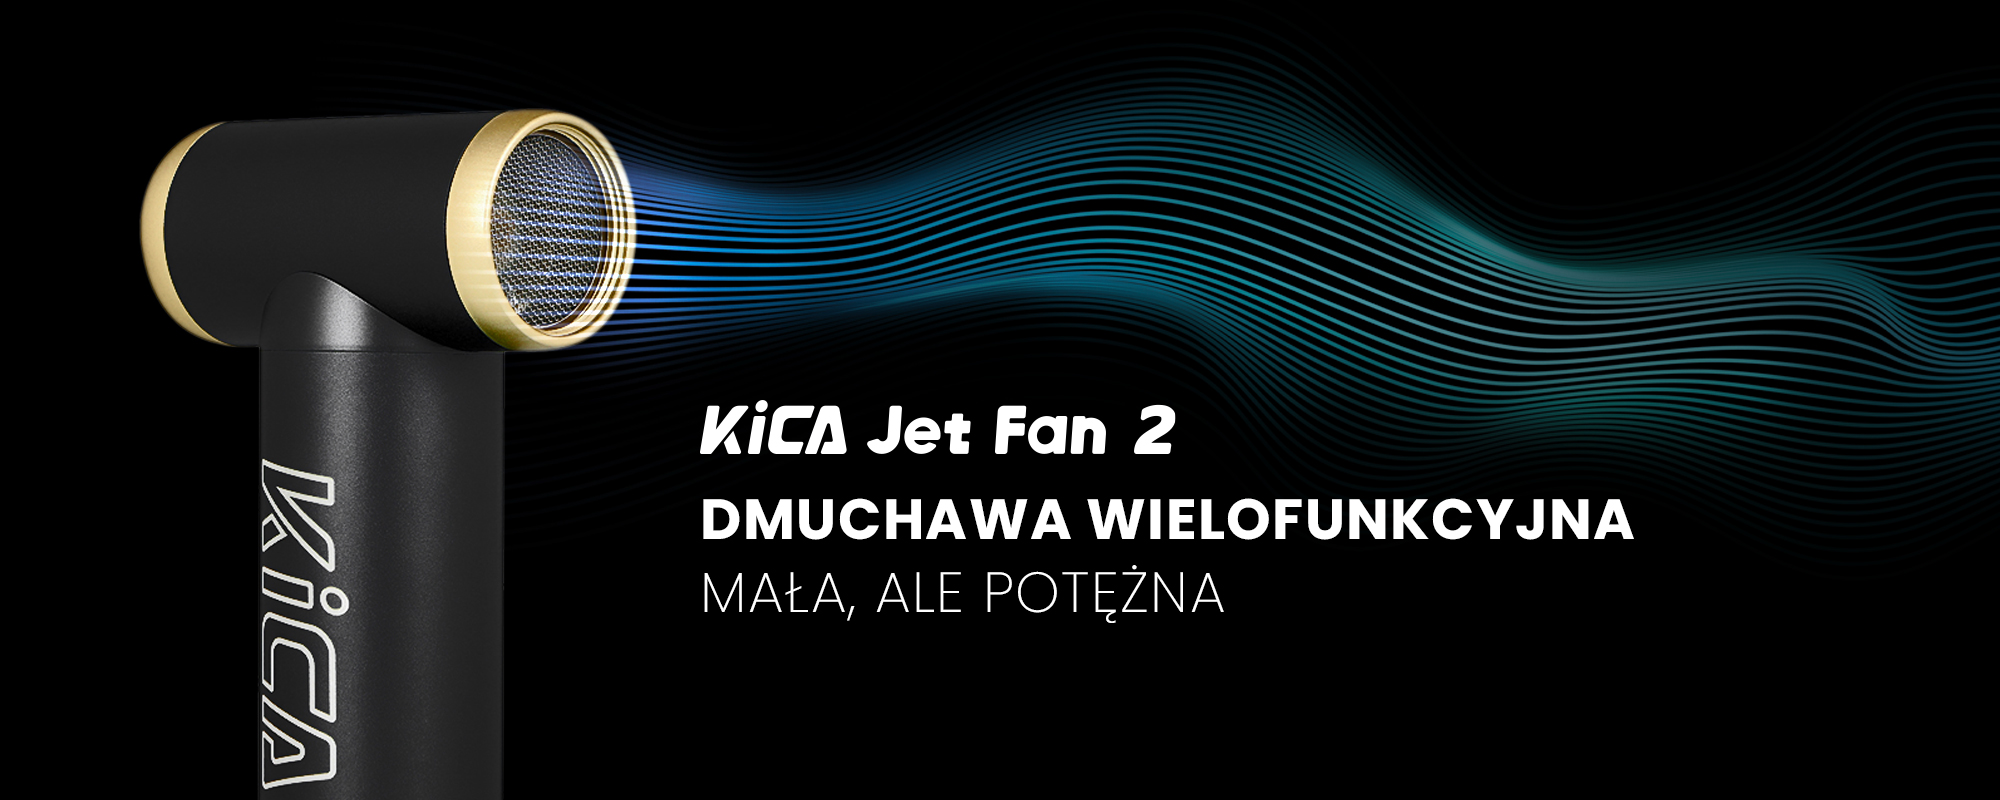 Dmuchawa wielofunkcyjna FeiyuTech KiCA JetFan 2 - czarna